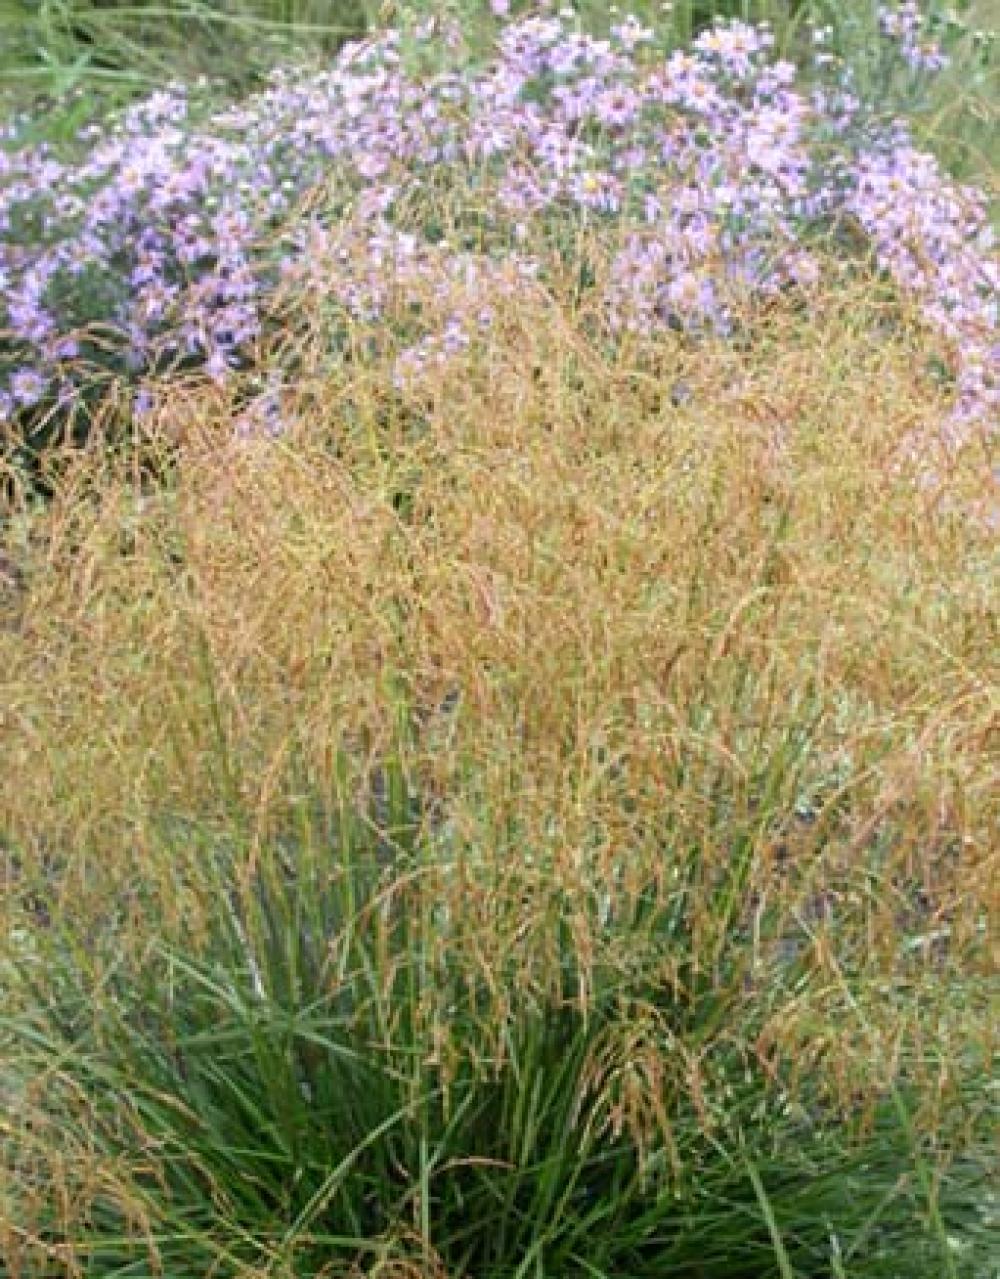 Deschampsia cespitosa 'Goldtau' Gold Dew Tufted Hair Grass